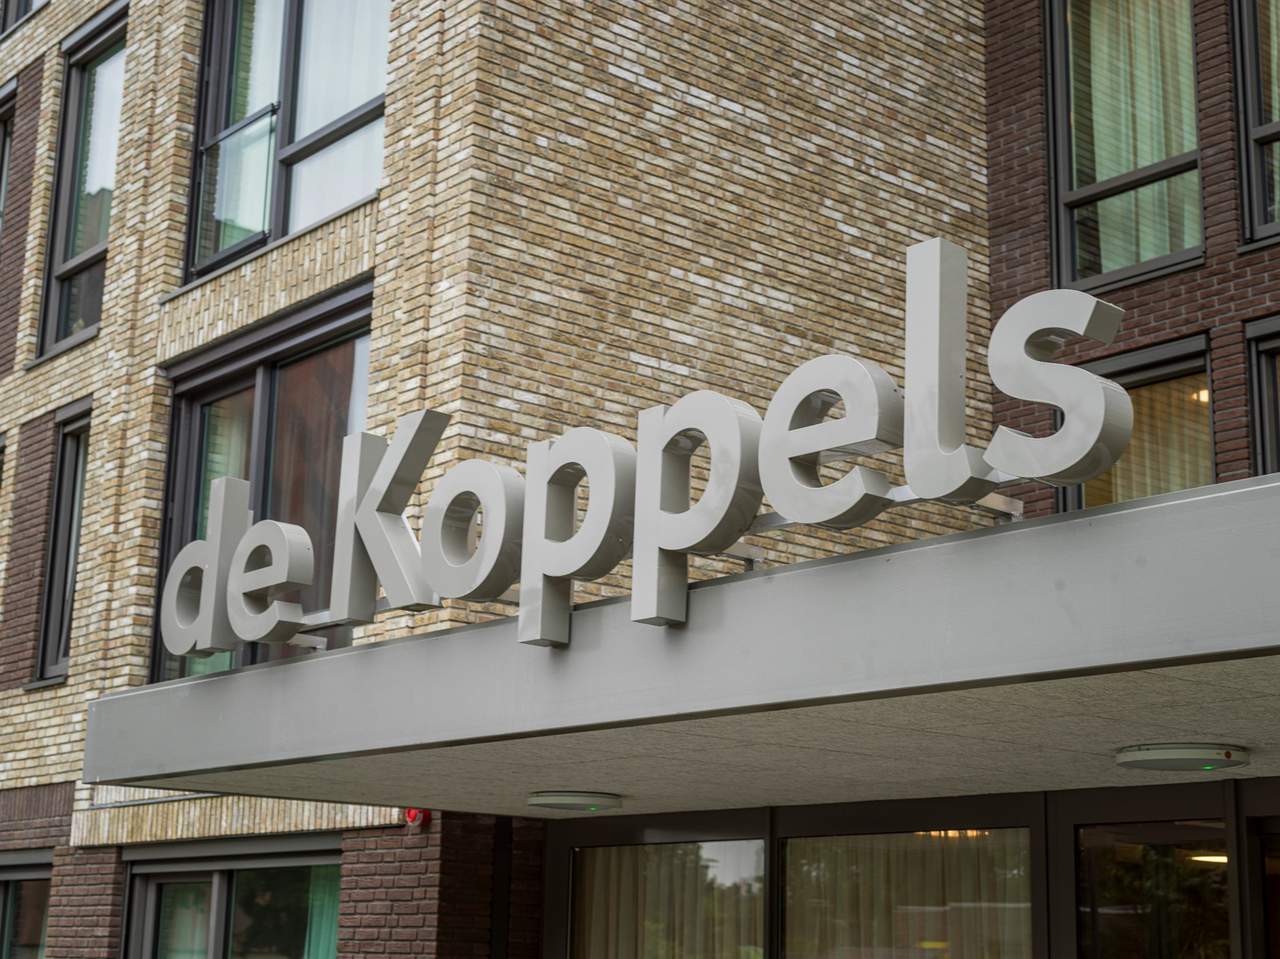 Zwolle_de Koppels 4